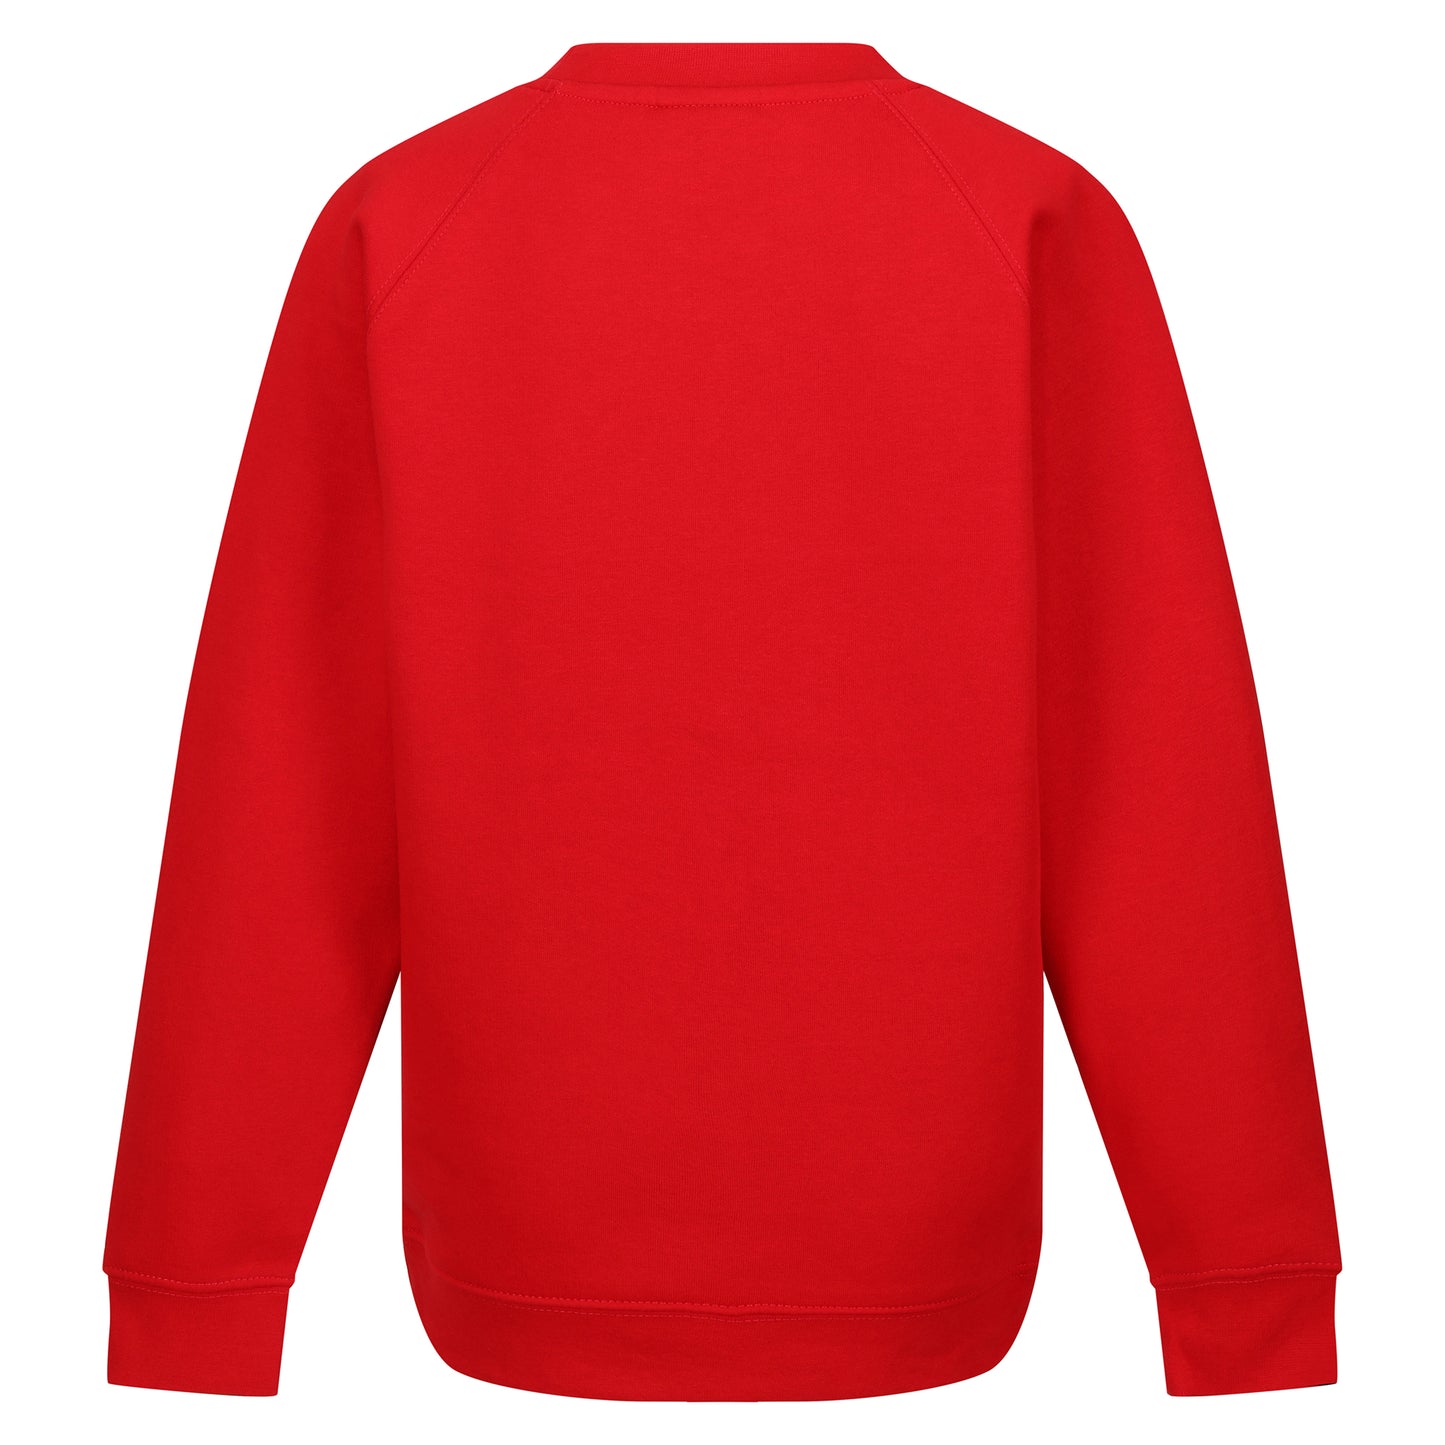 Red - Crew Neck Sweatshirt